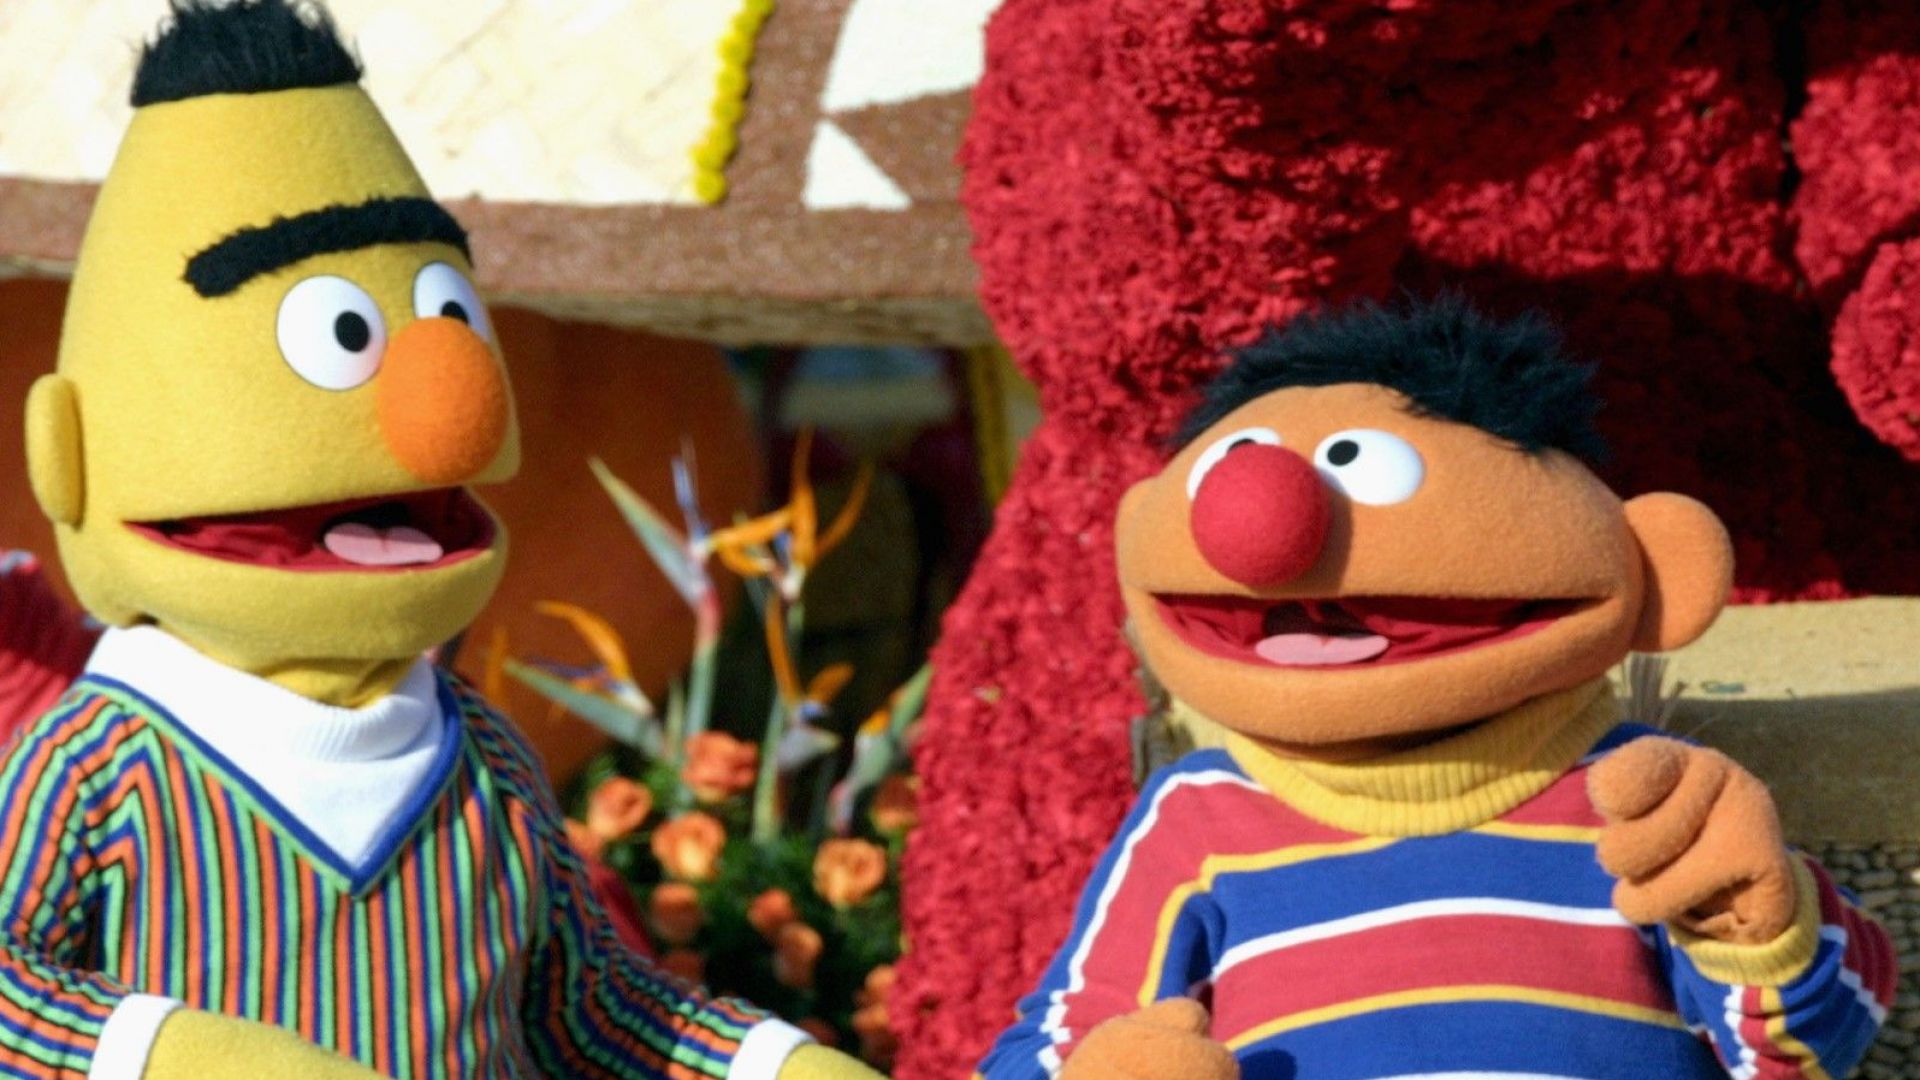 Продуцентите на "Улица Сезам" отрекоха героите Бърт и Ърни да са гей двойка